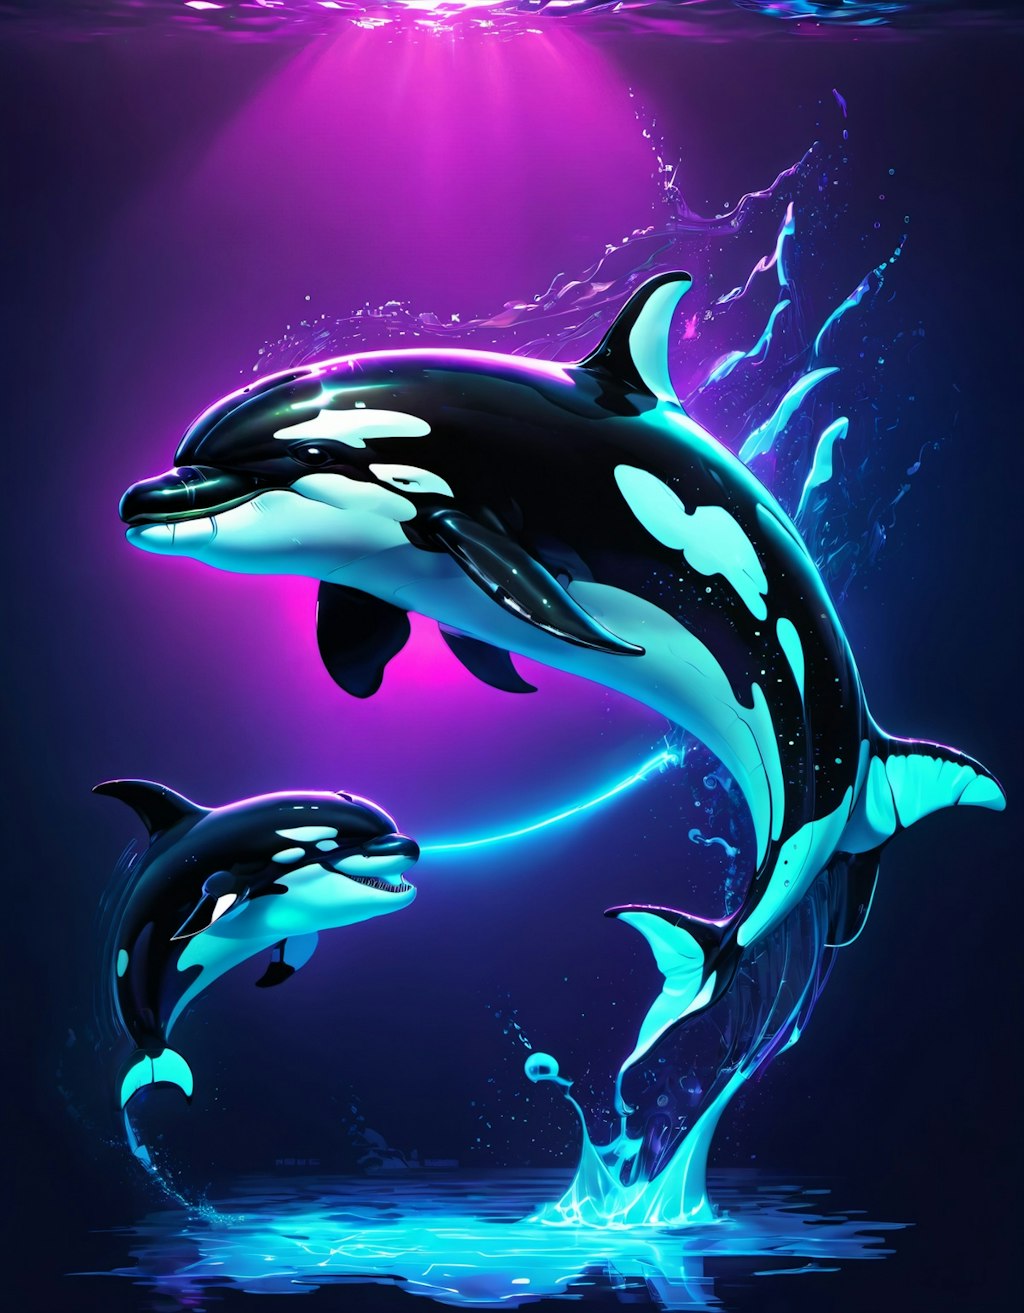 ORCA